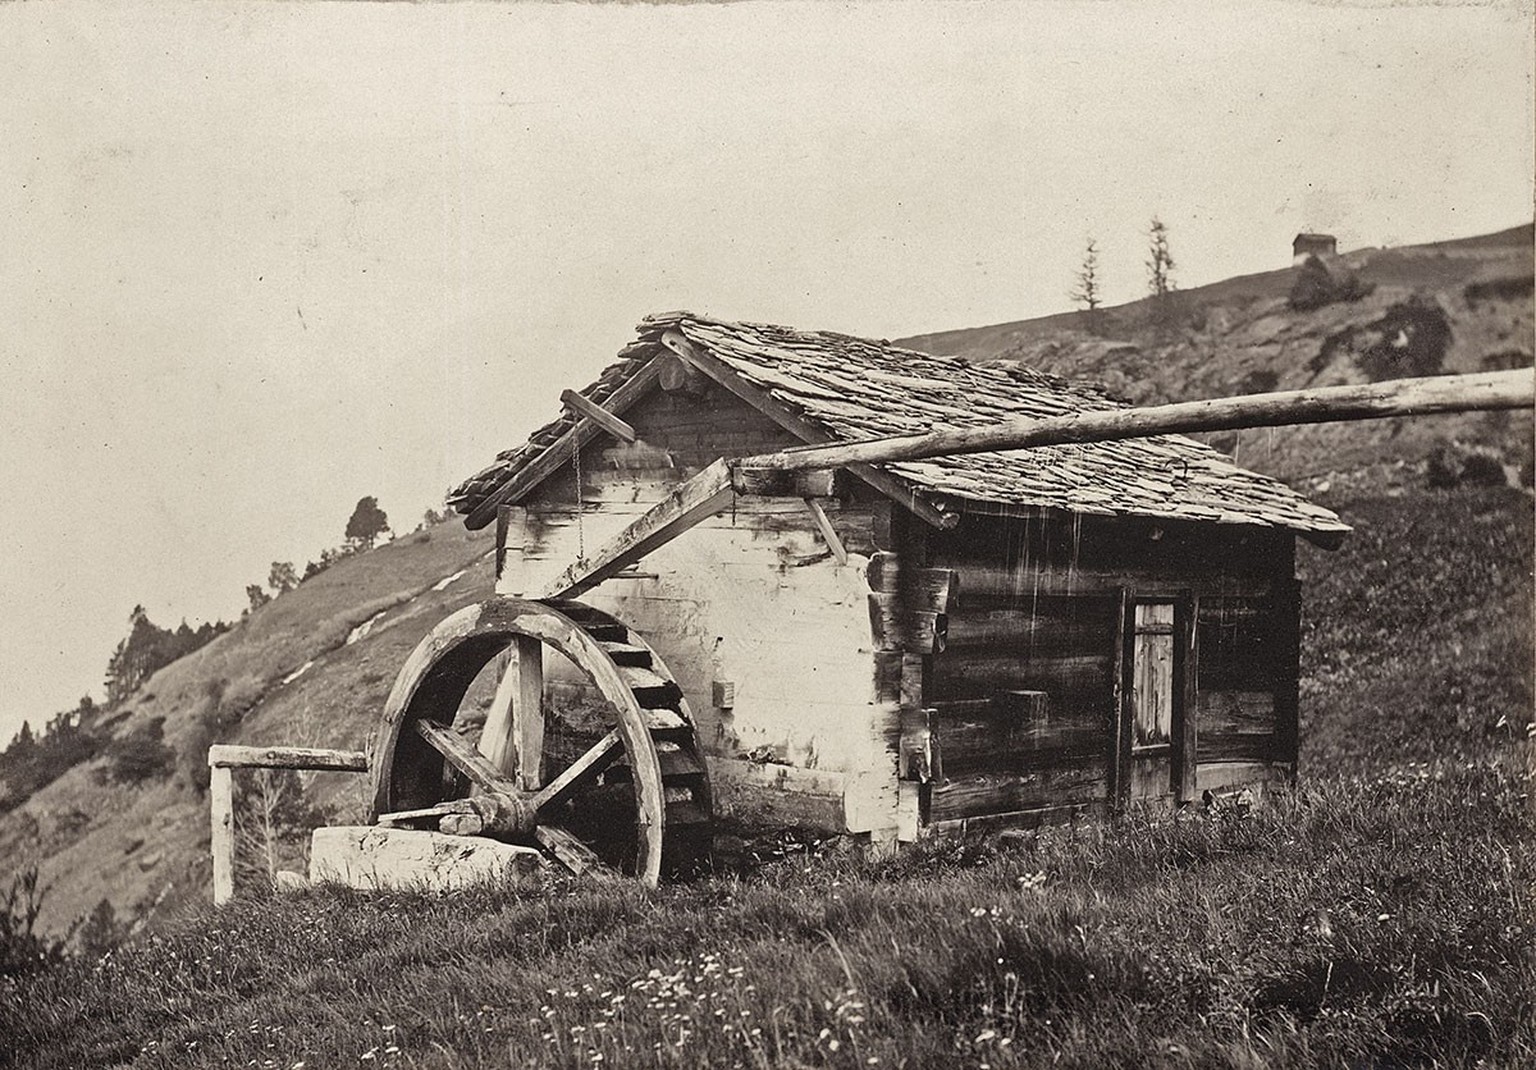 Eine mit Wasser angetriebene Roggenmühle im Kanton Wallis, 1903.
https://ba.e-pics.ethz.ch/catalog/ETHBIB.Bildarchiv/r/57010